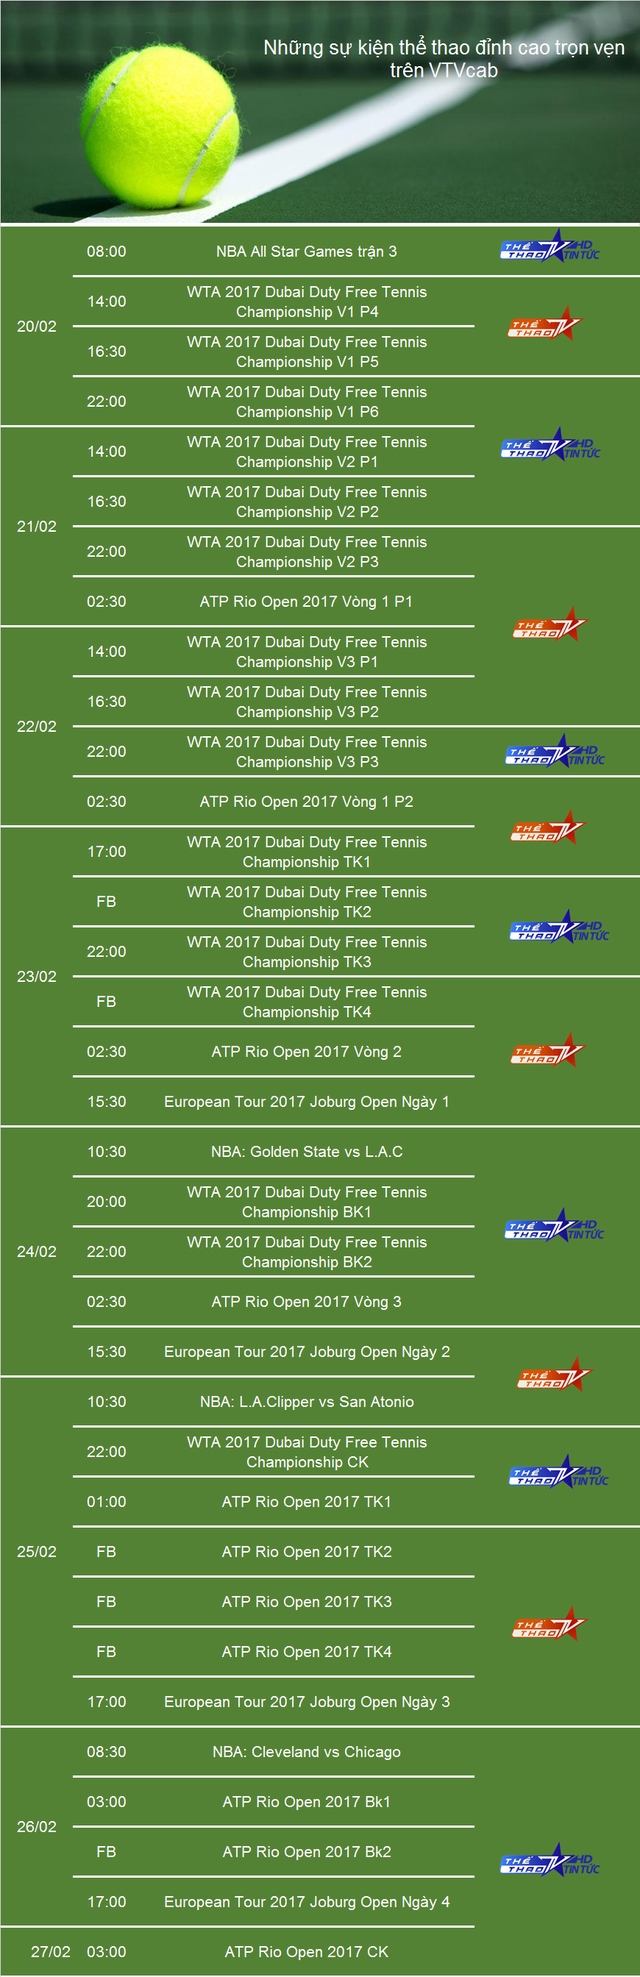 Lịch trực tiếp thể thao trên VTVCab tuần từ 20-26/2: Rực lửa NBA, Champions League - Ảnh 1.